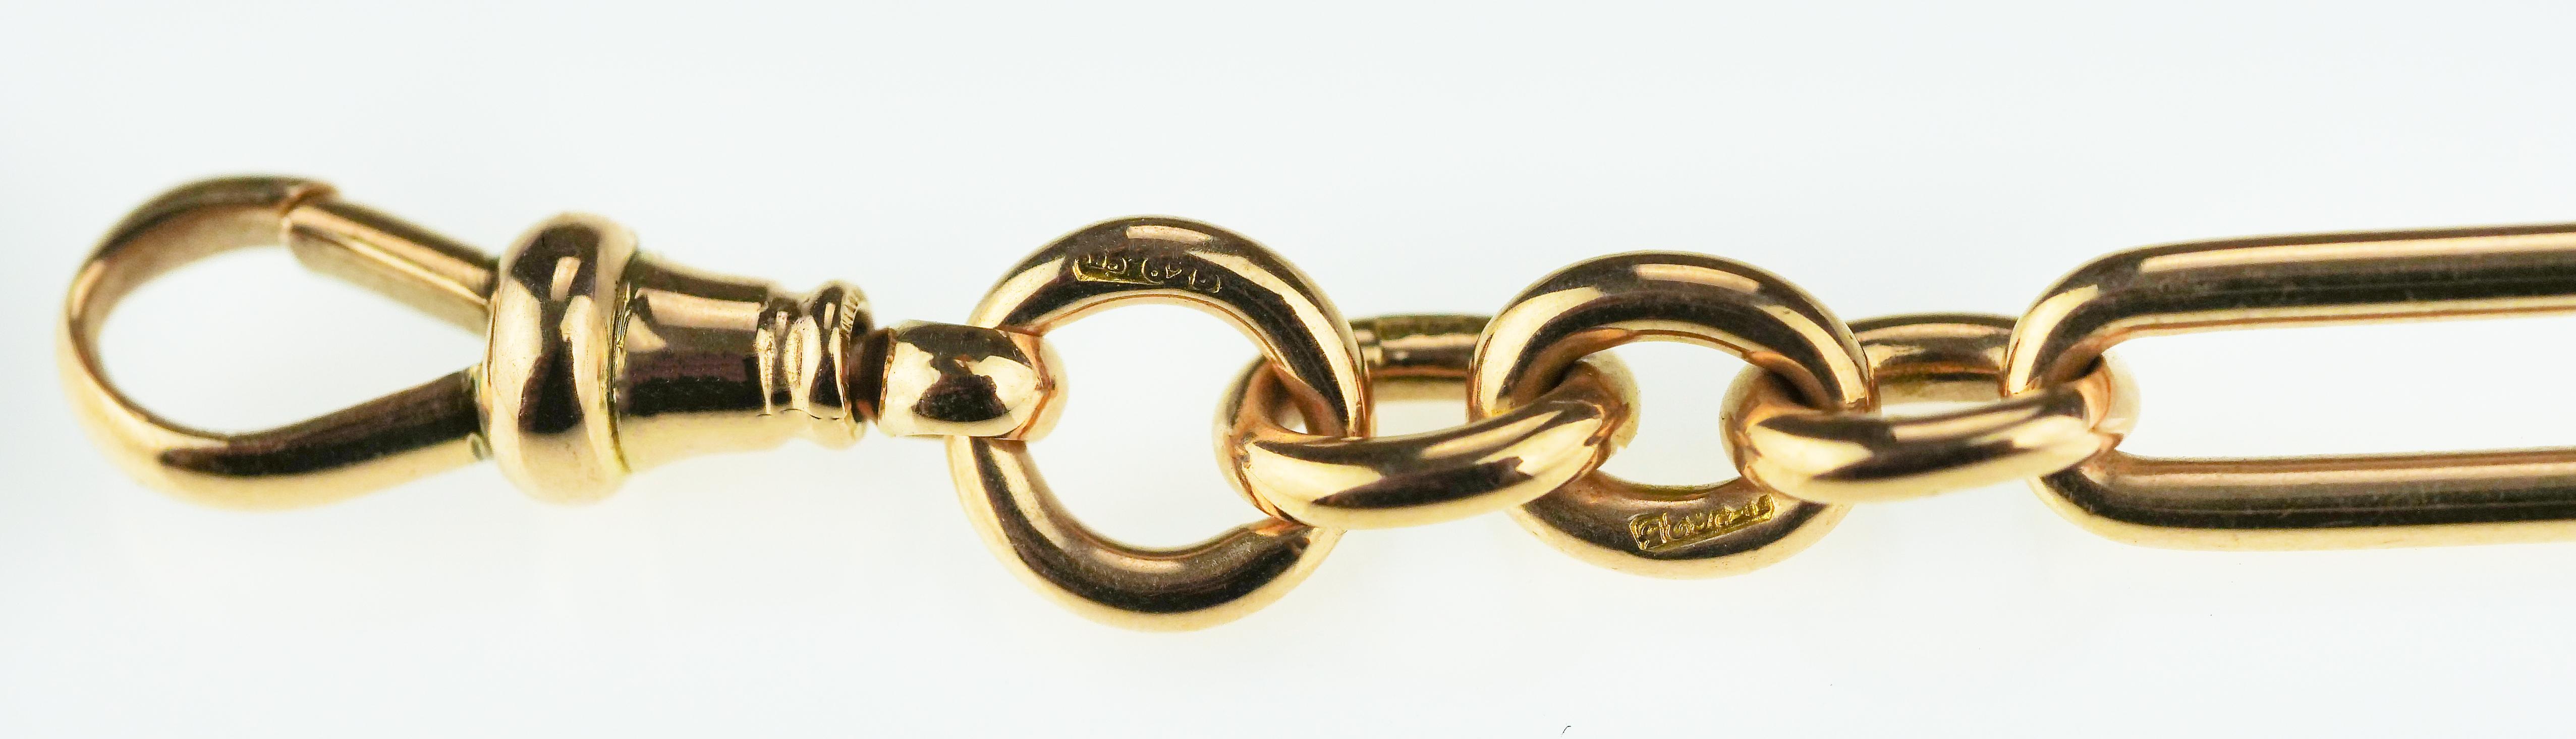 Women's or Men's Antique Victorian Pocket Watch Chain with British Hallmarked 15k Gold, 1891